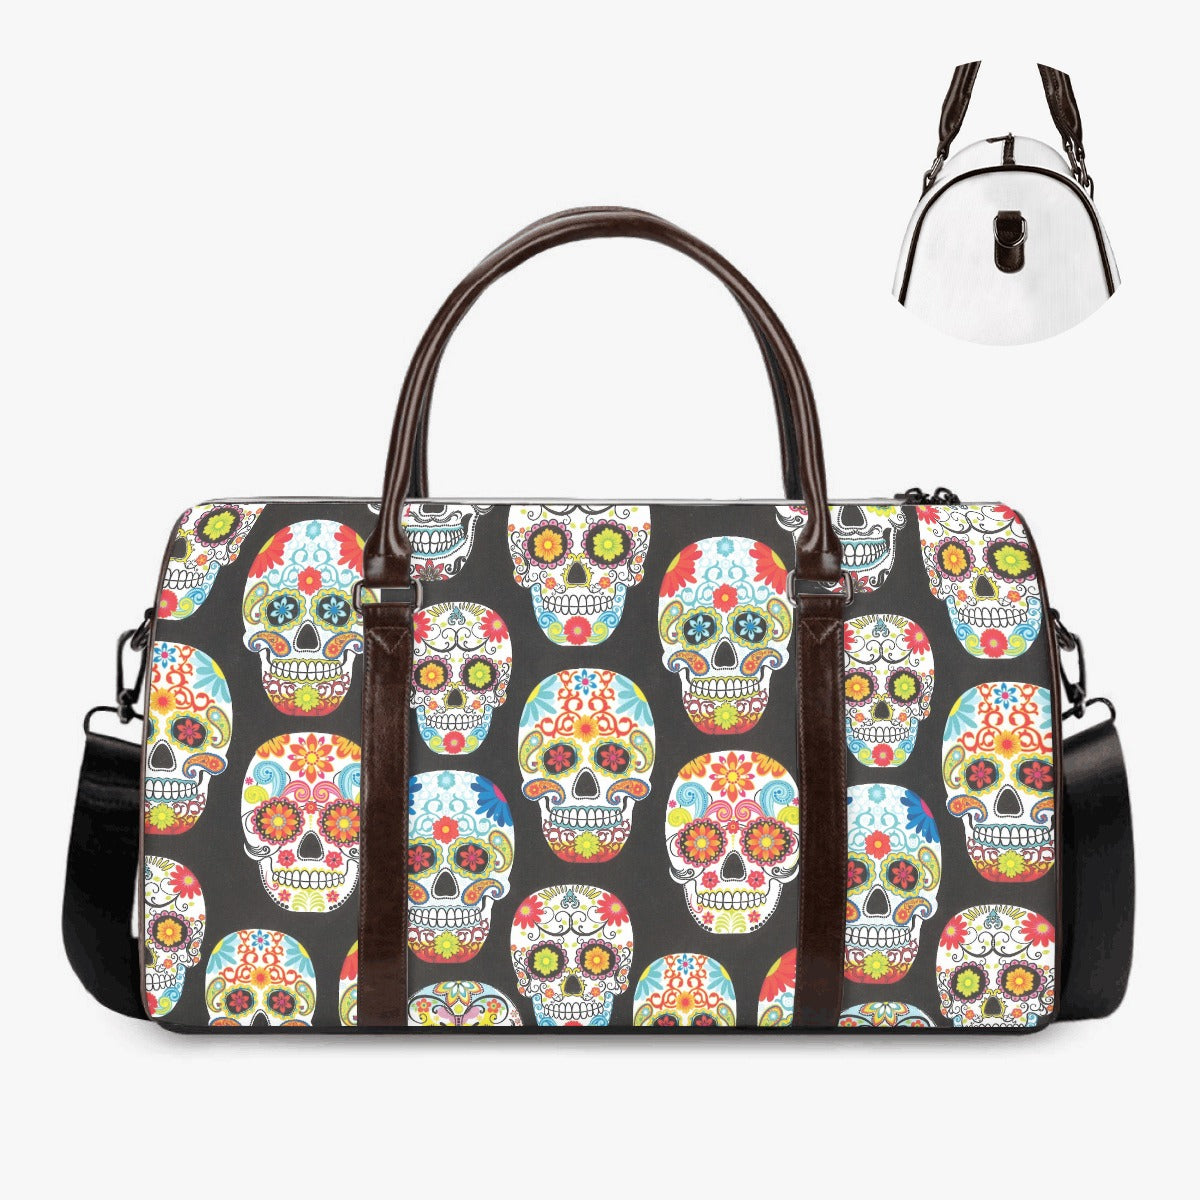 Sugar skull girl Hospital Bag, floral skull Hospital Bag, calaveras skull Overnight Bag, dia de los muertos skull travel bag